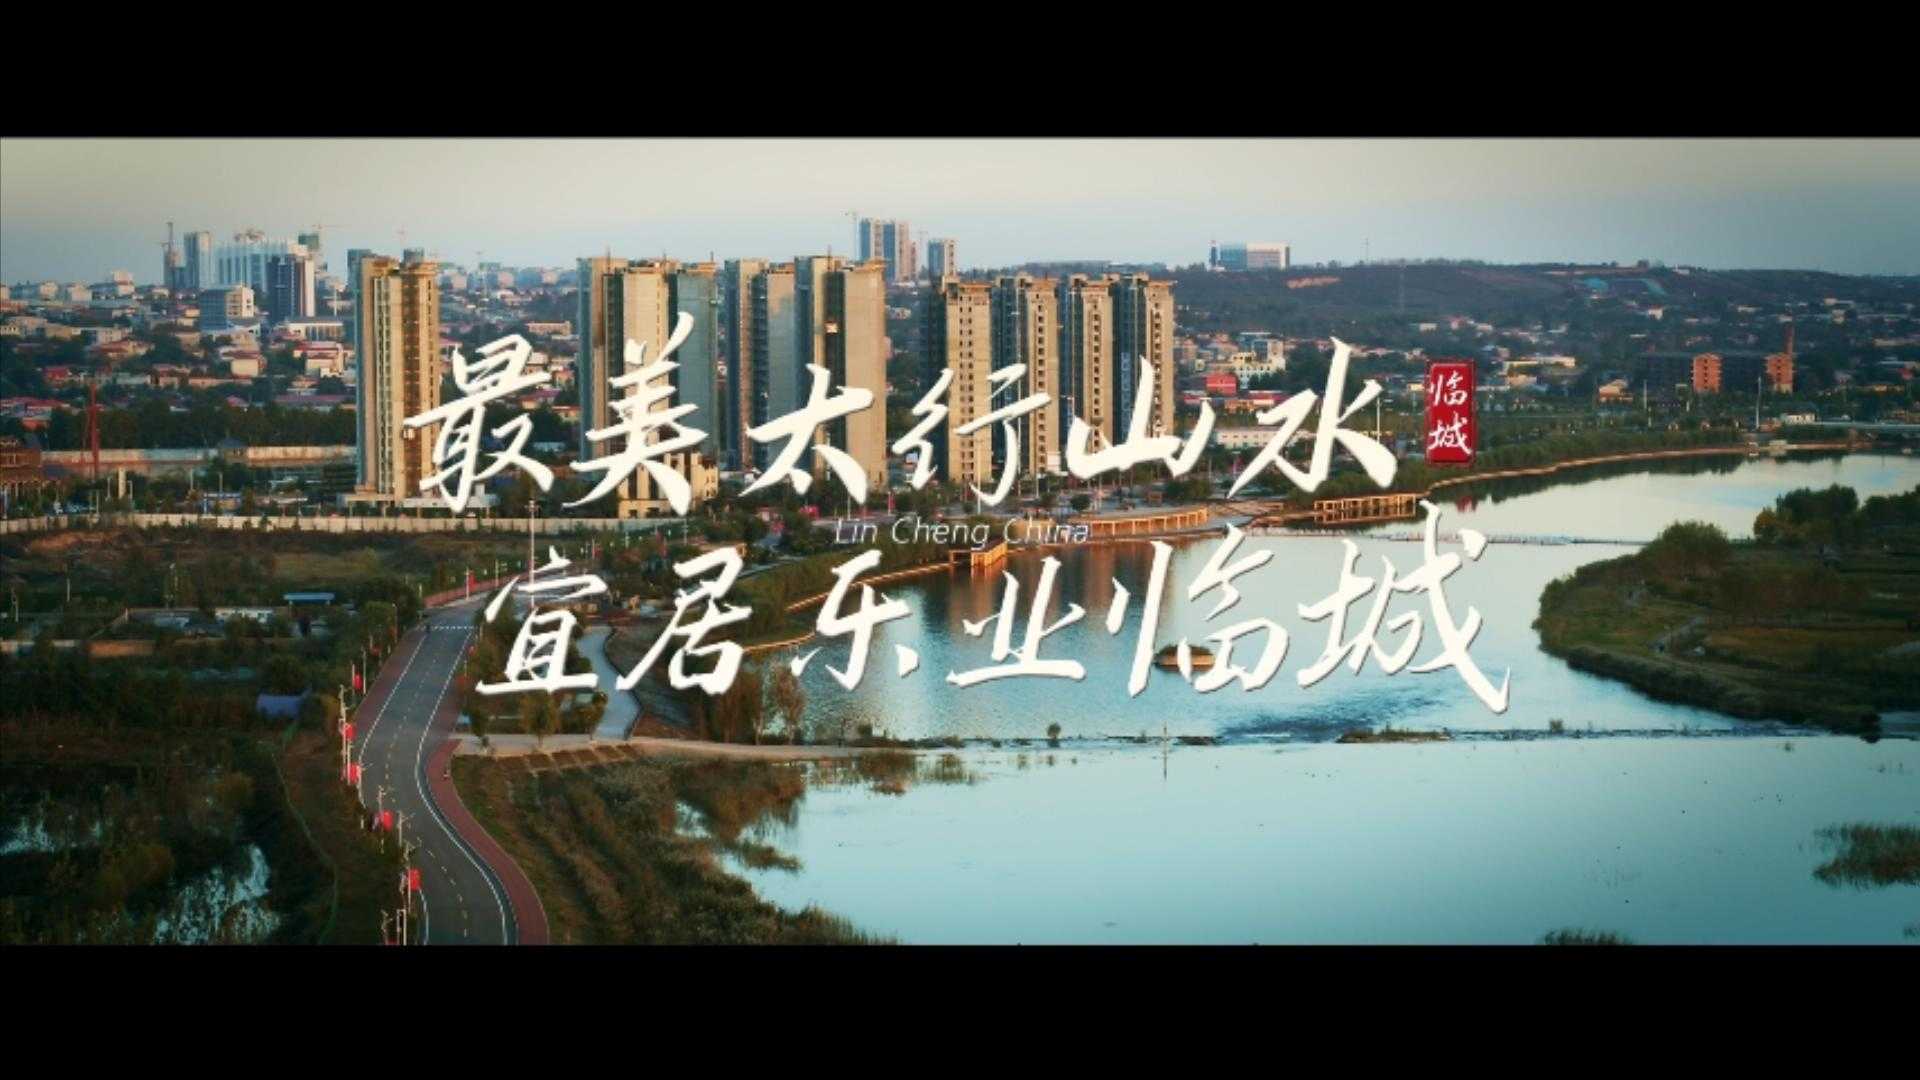 最美太行山水 宜居乐业临城 临城县招商引资宣传片